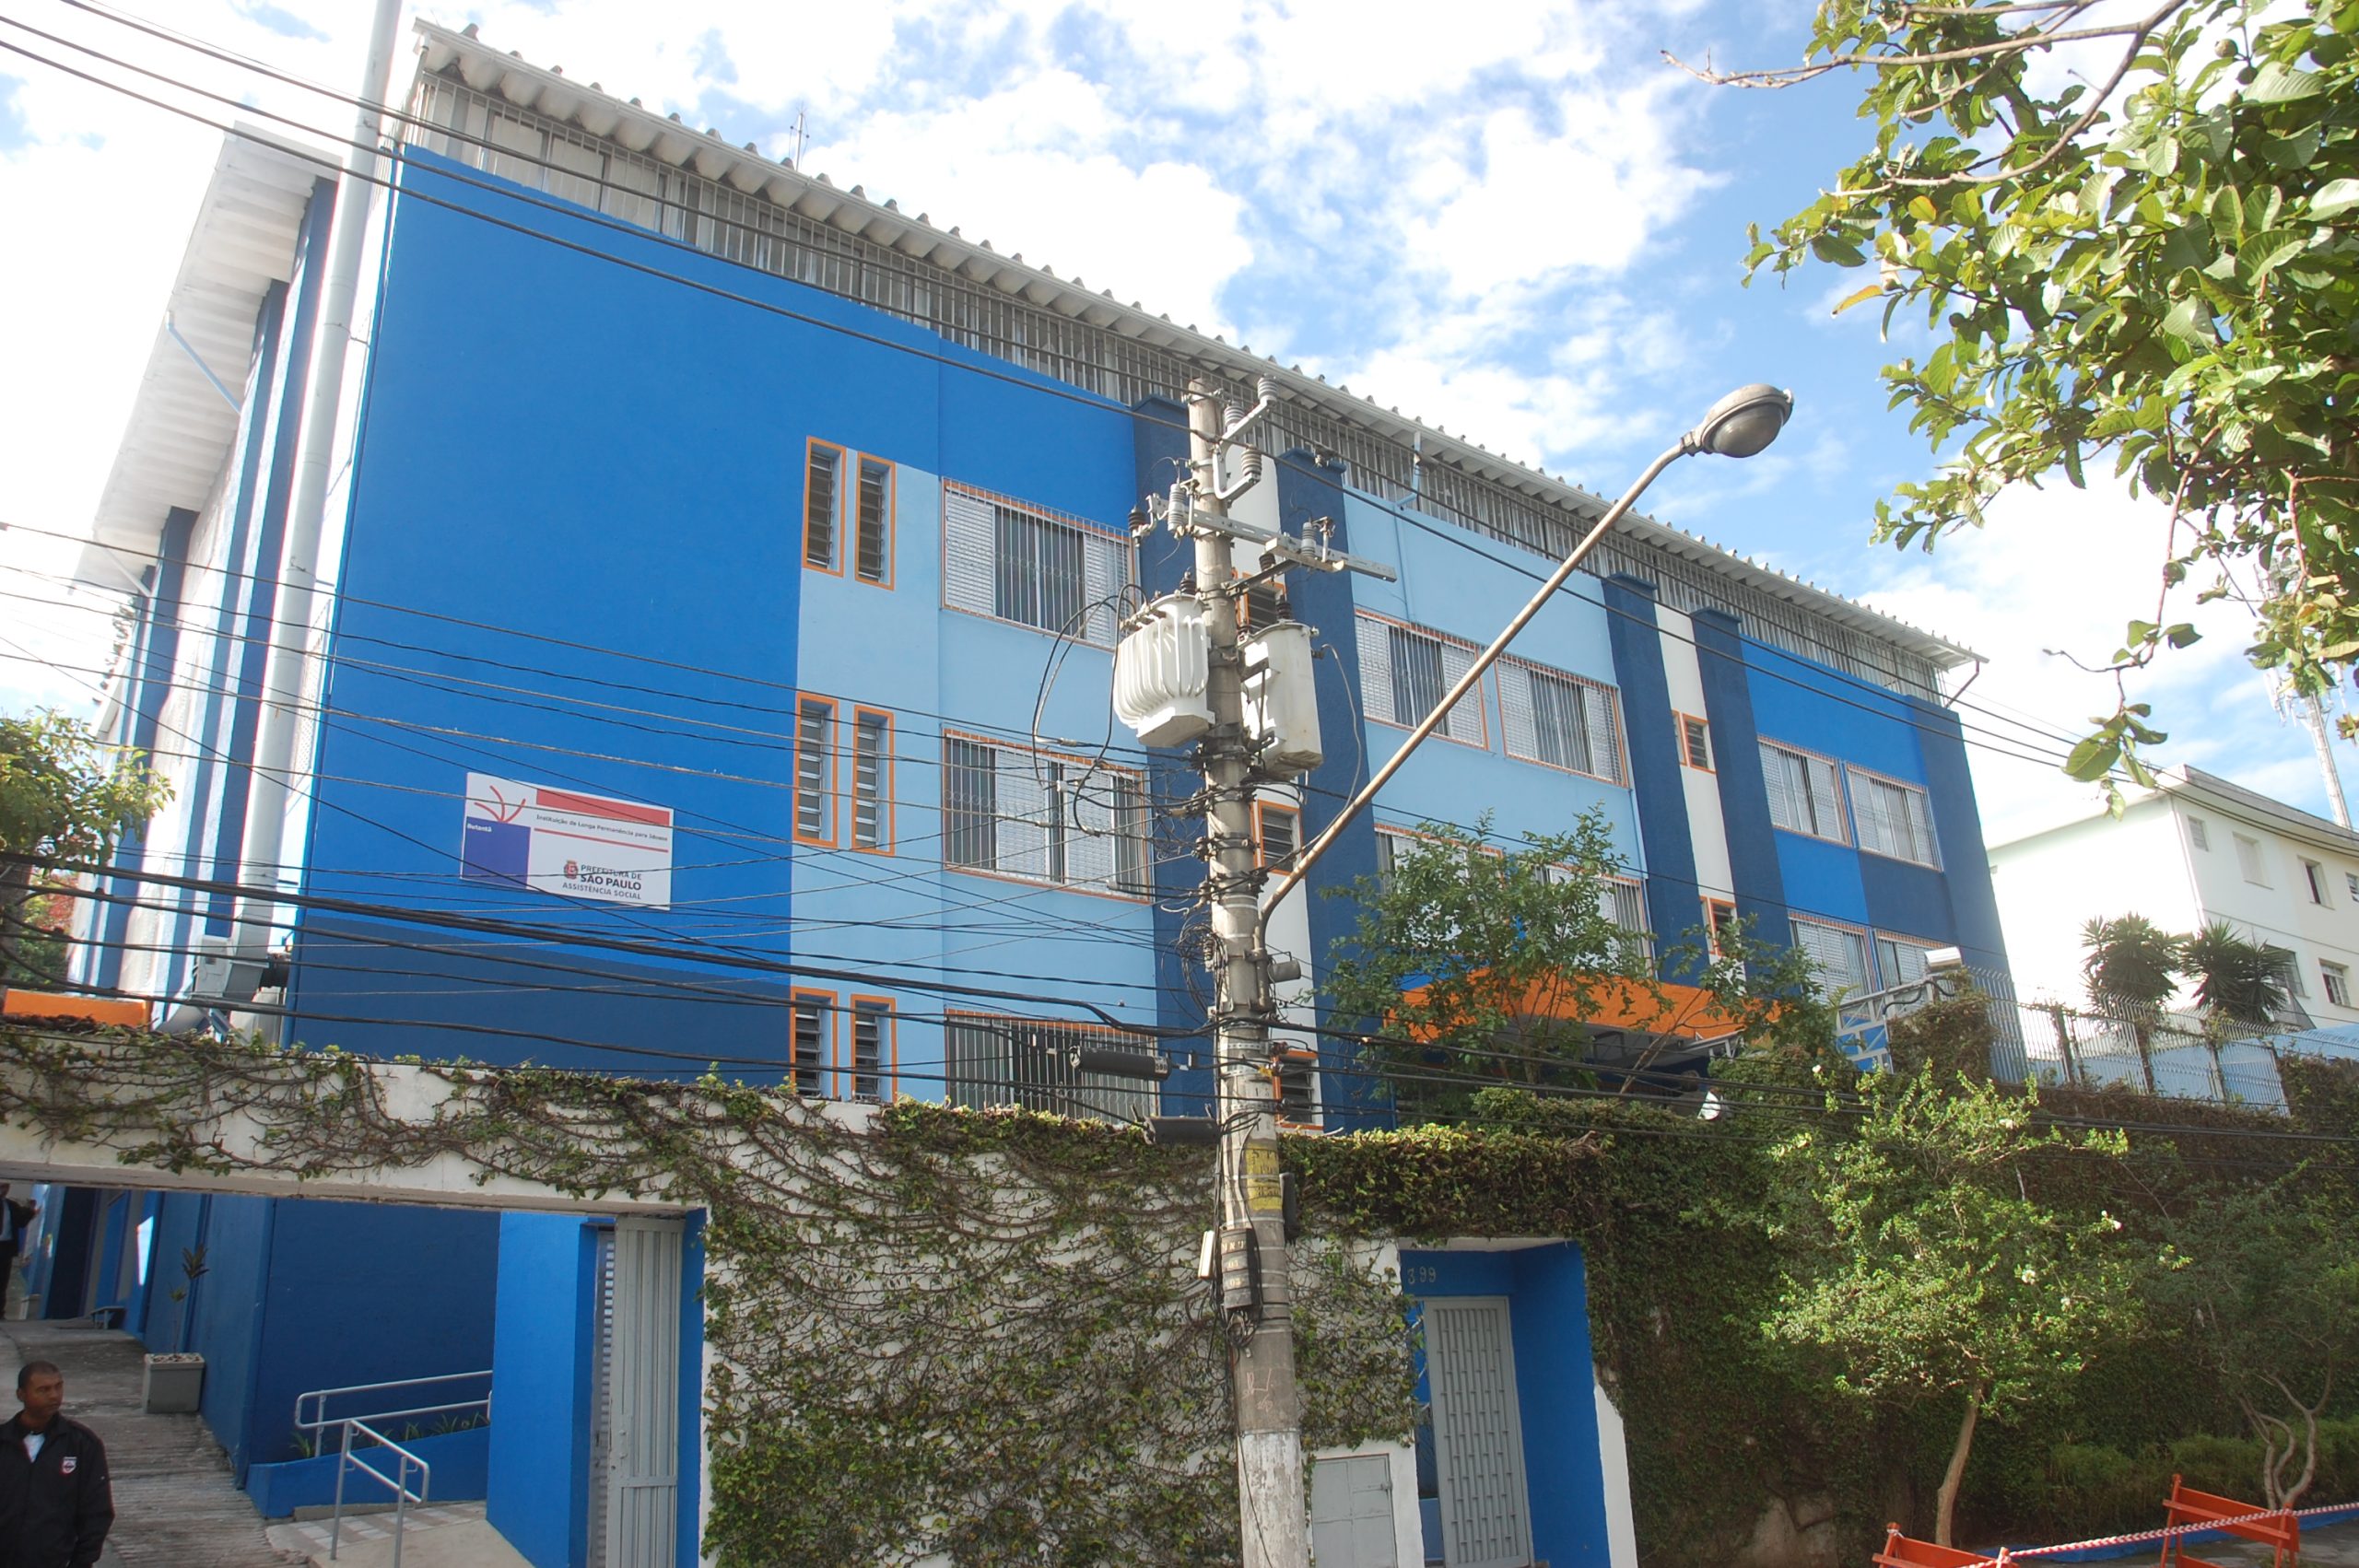 Residência para idosos inaugurada em dezembro de 2012 por Gilberto Kassab no Butantã, zona oeste